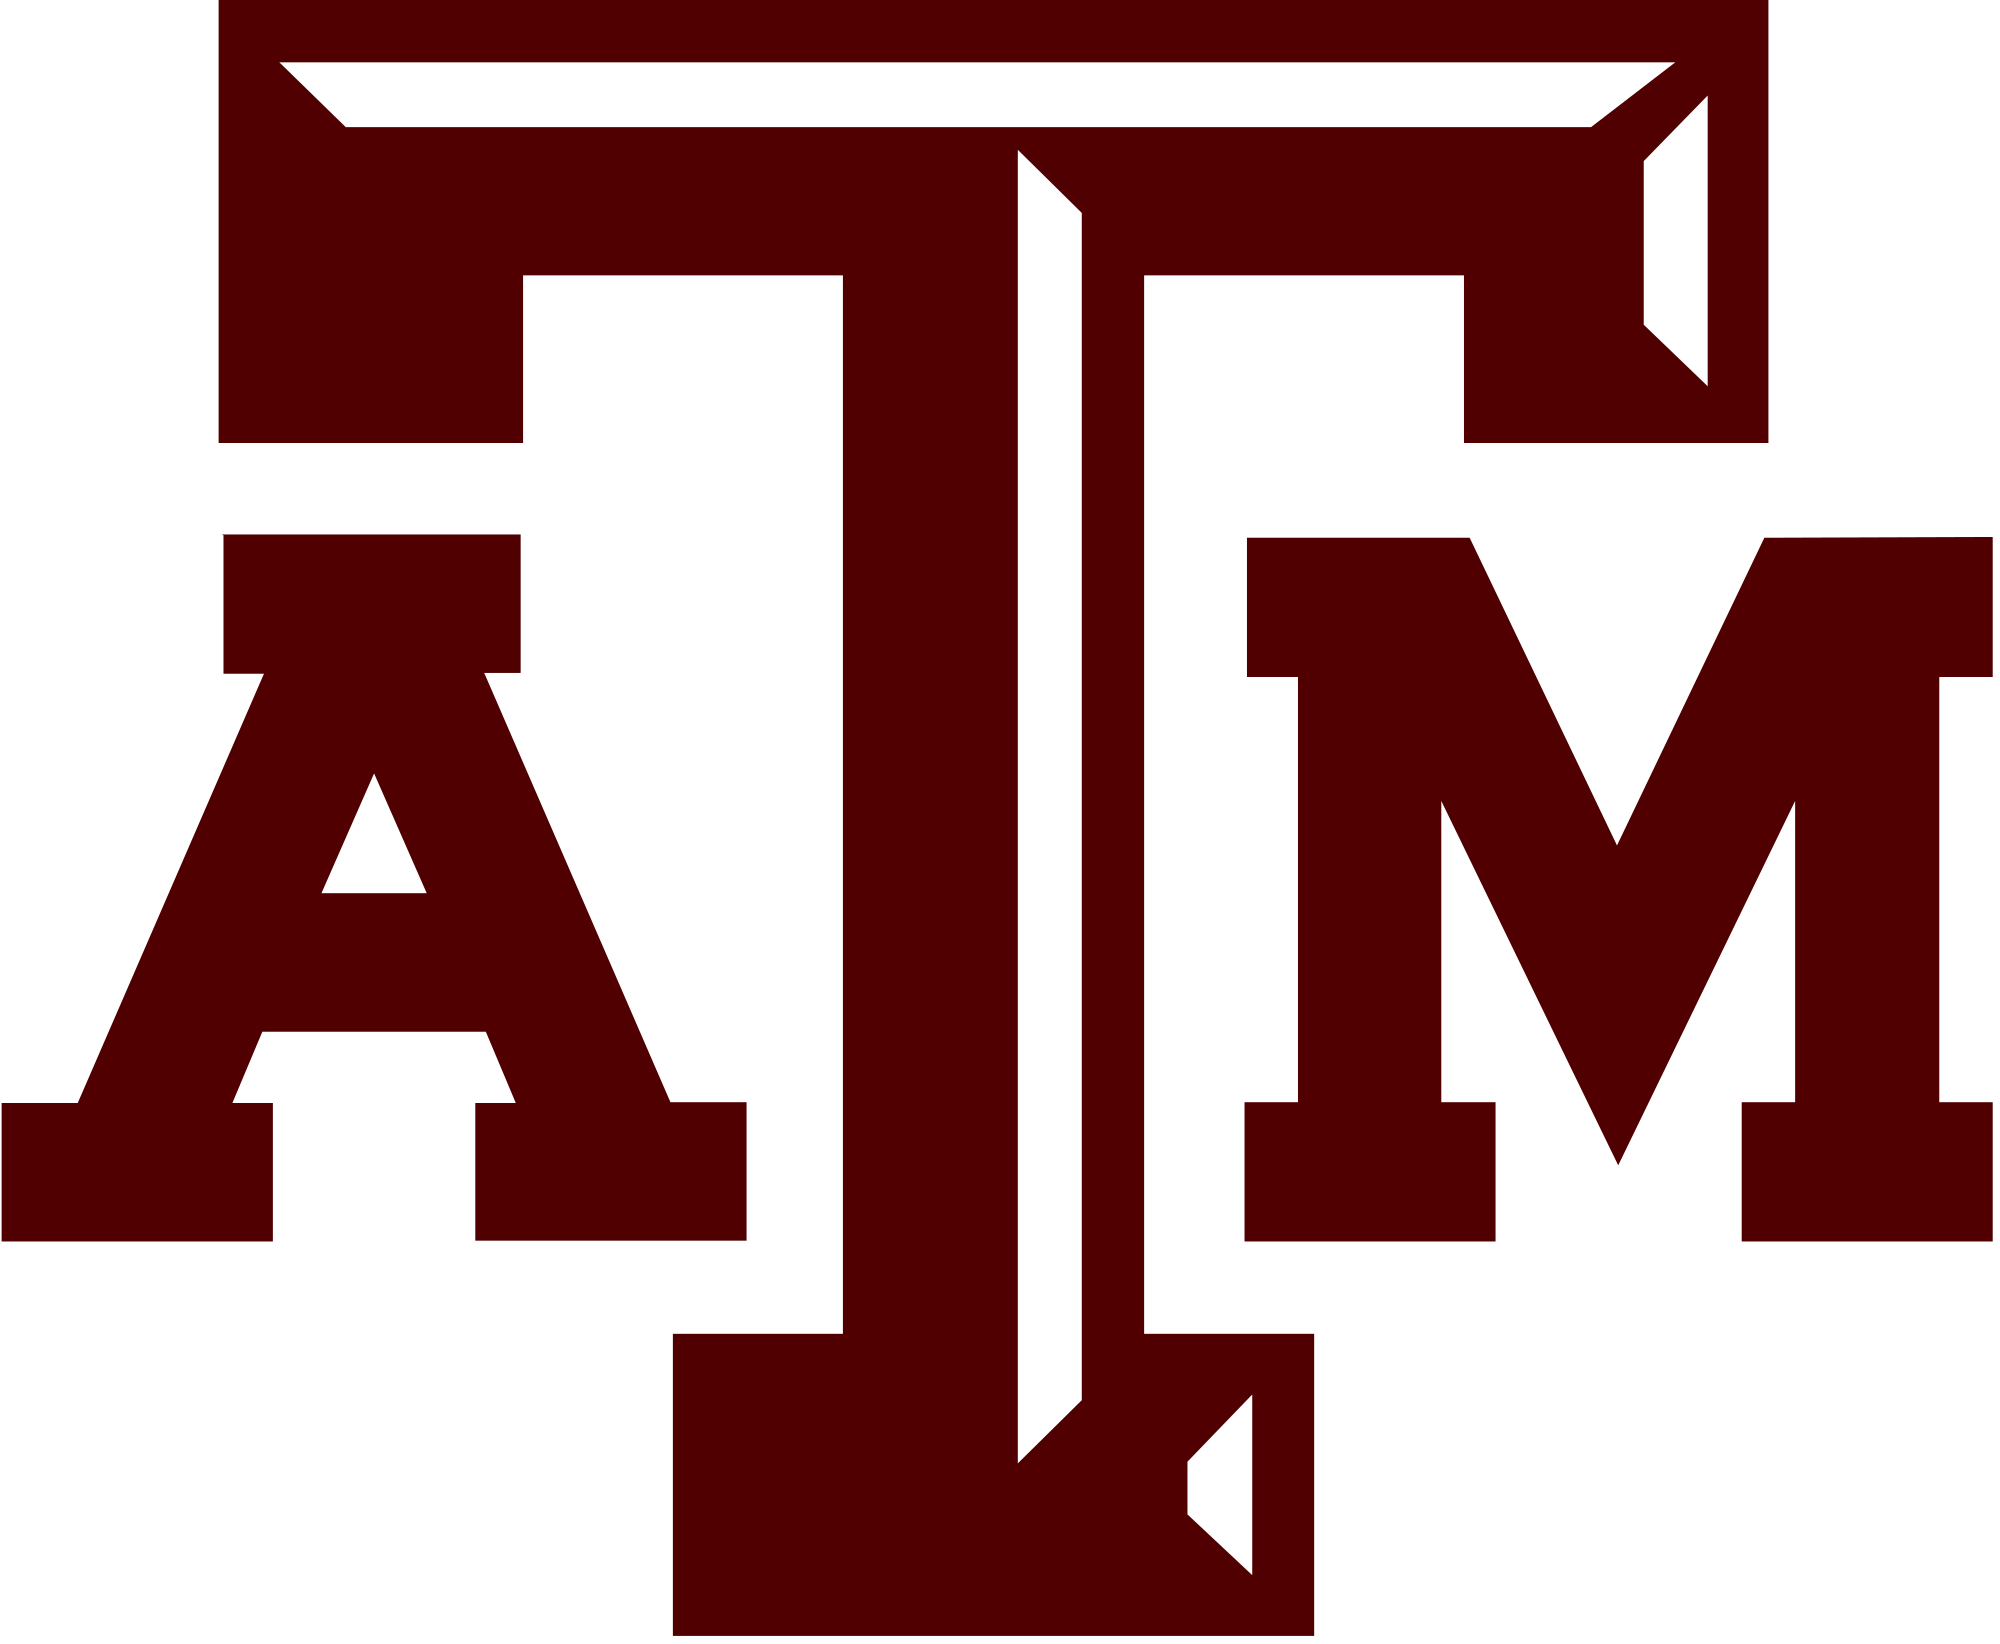 2000px-Texas_A&M_University_aTm_logo.svg.png